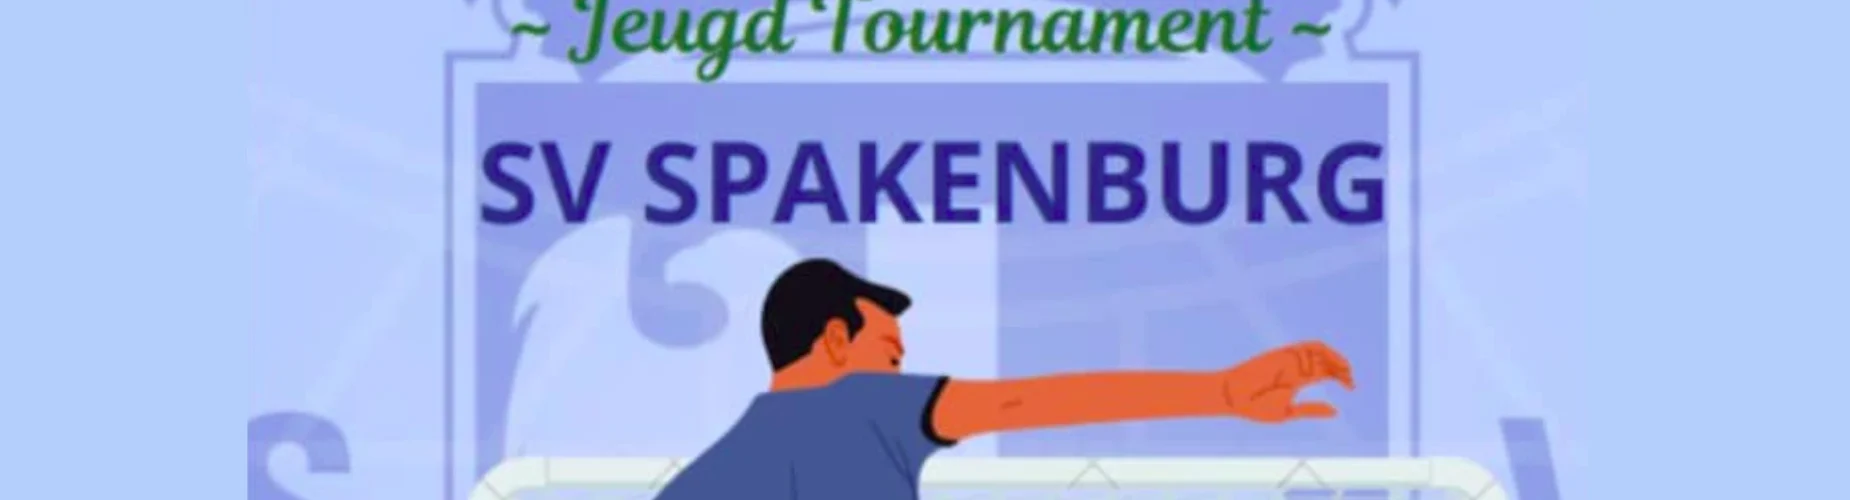 Banner - Spakenburg Tournament - sv Spakenburg - Bunschoten-Spakenburg